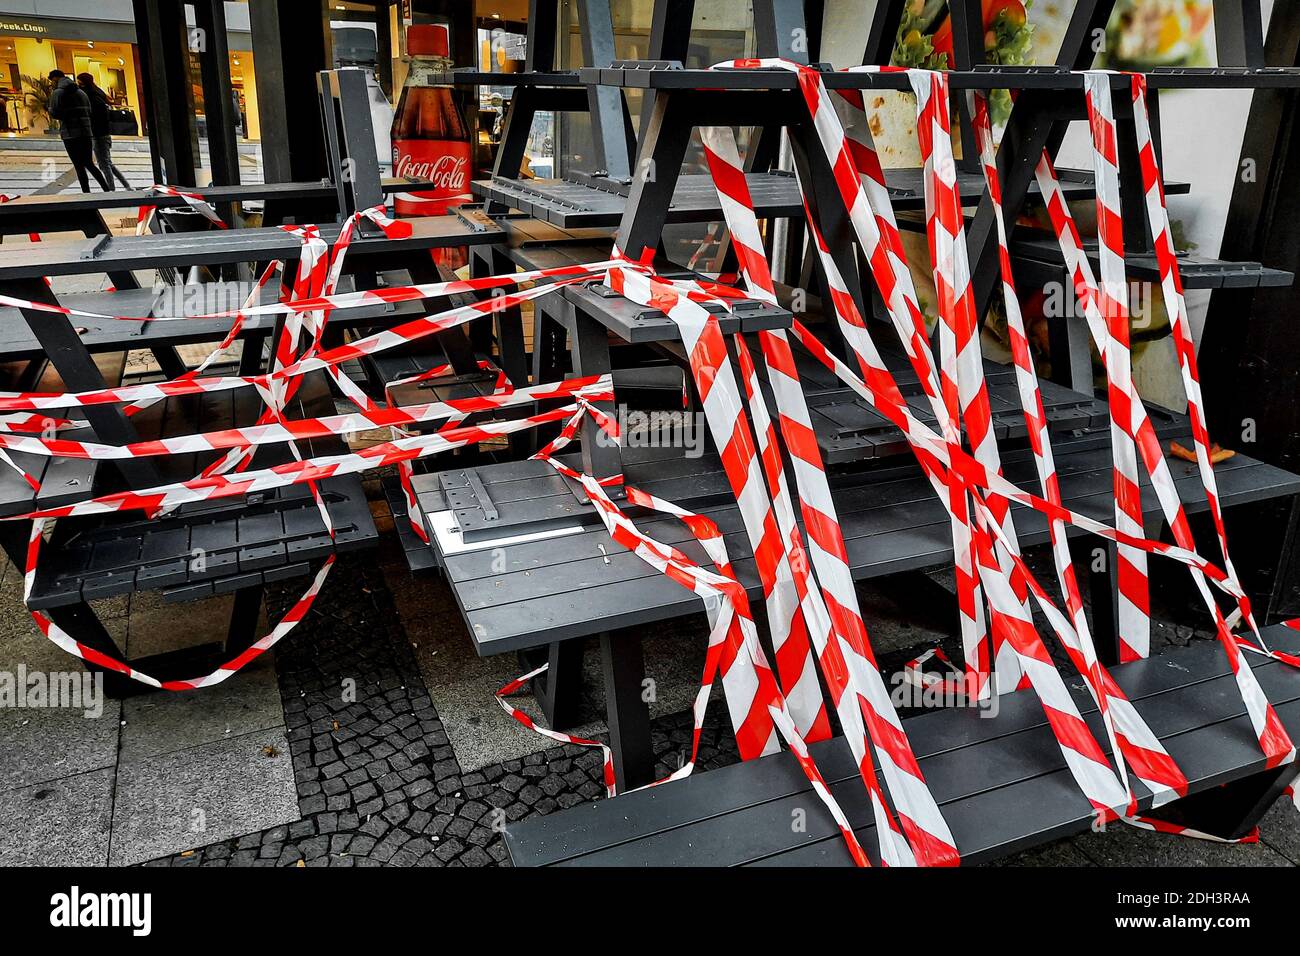 Dortmund, 09.12.2020 - im Außenbereich eines Backshops sind Tische und Bänke mit rot-weißem Flatterband abgeperrt. Restaurants und Cafés dürfen durch Corona-Regelungen nur noch Speisen zum Mitnehmen anbieten. Stockfoto